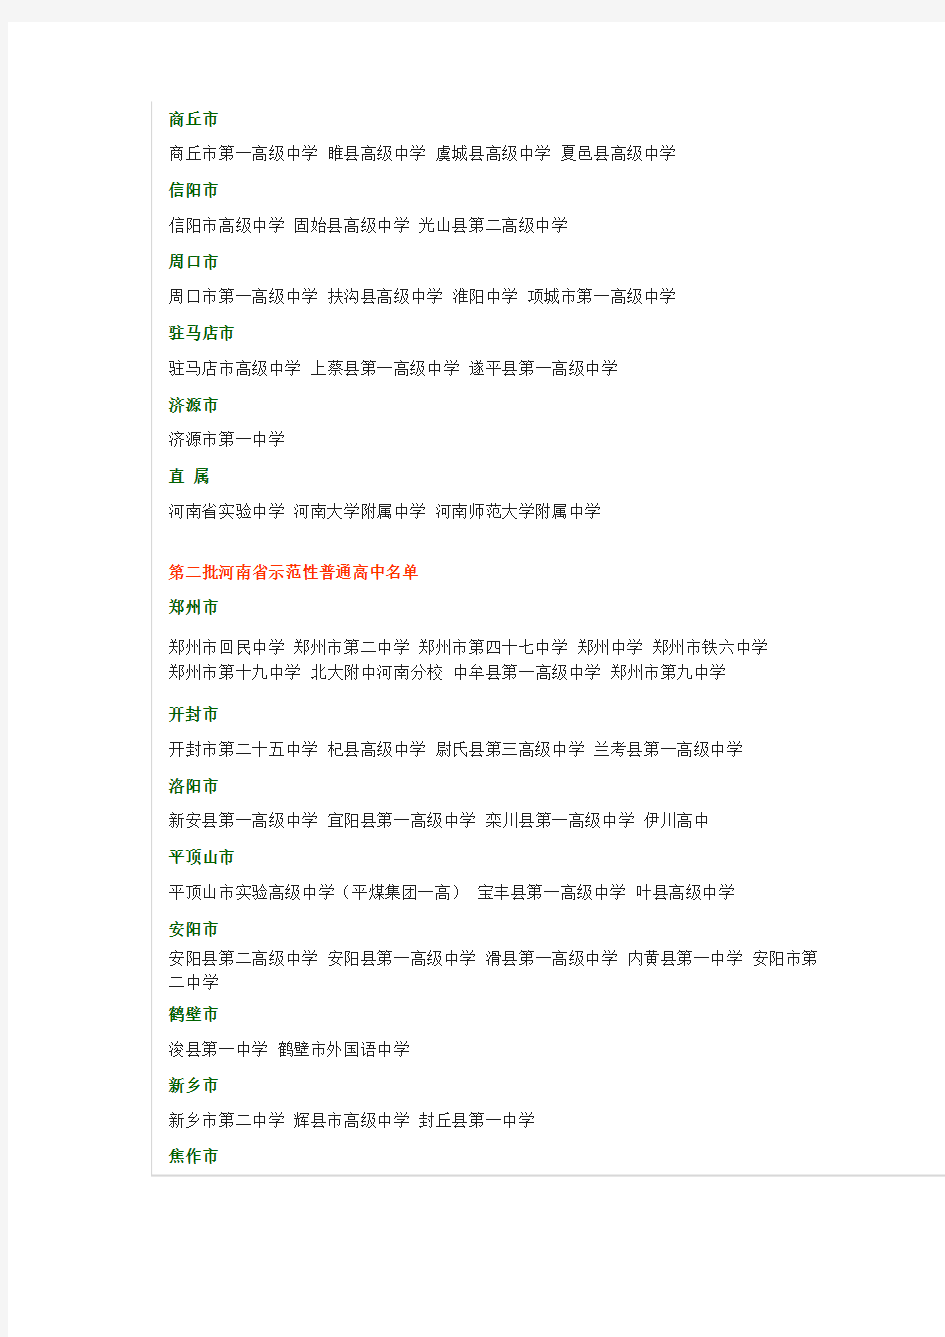 河南省示范性普通高中完整名单